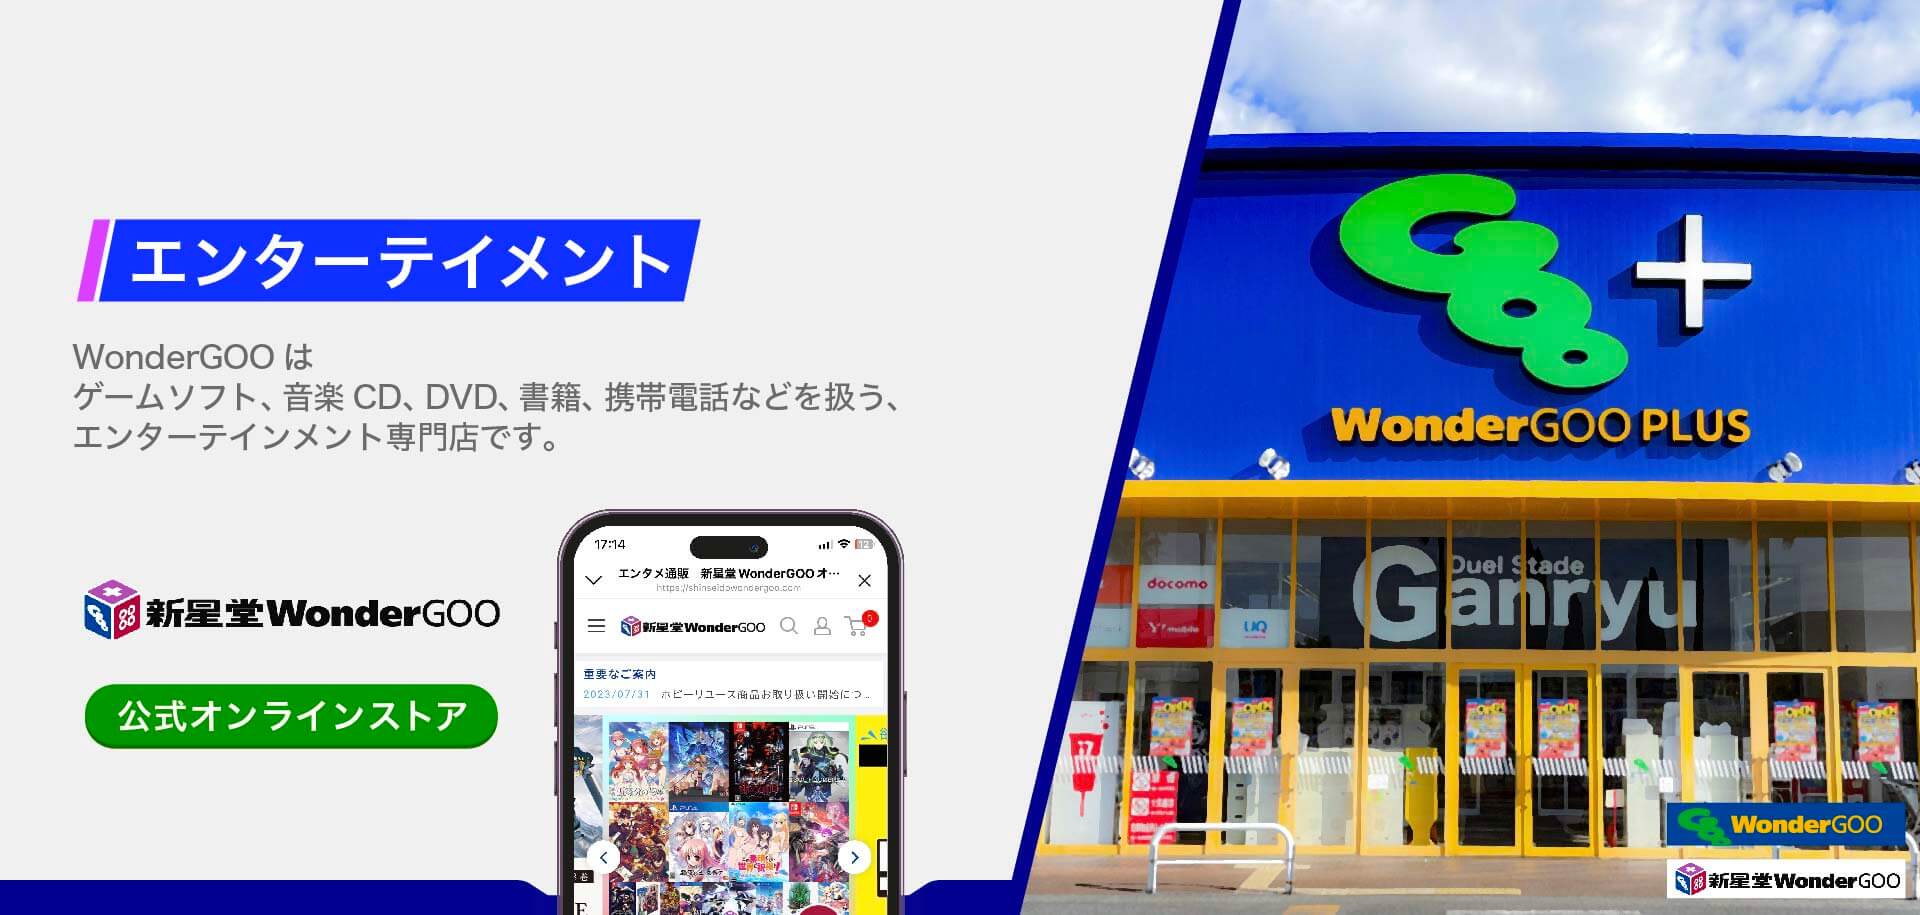 WonderGOOはゲームソフト、音楽CD、DVD、書籍、携帯電話などを扱う、エンターテイメイント専門店です。